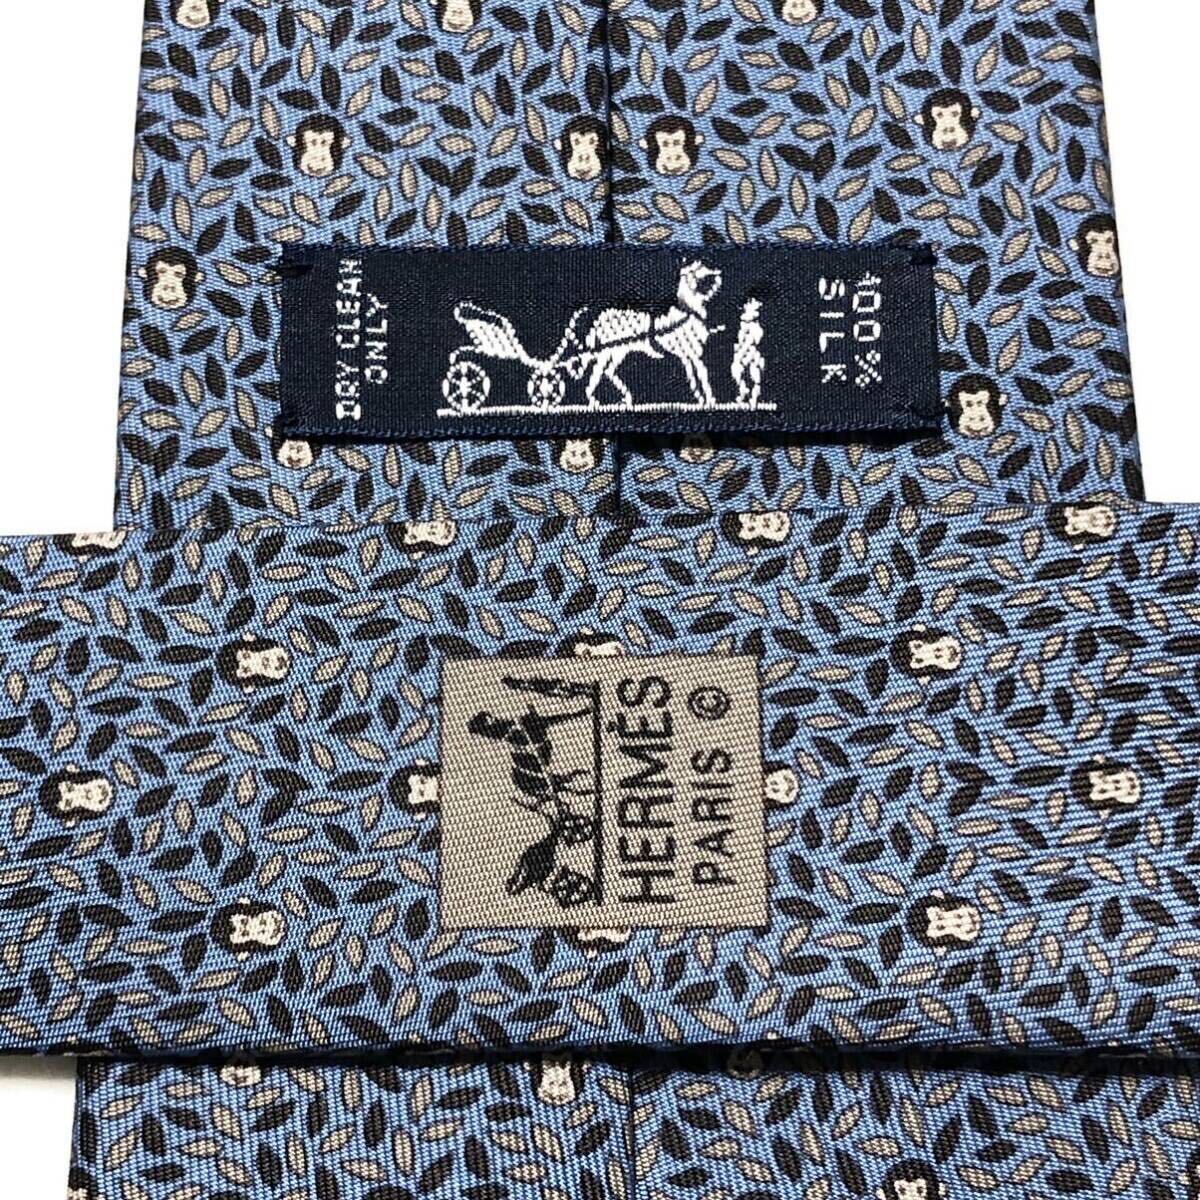 # прекрасный товар #HERMES Hermes галстук лист .. обезьяна . Monkey общий рисунок шелк 100% Франция производства оттенок голубого бизнес 